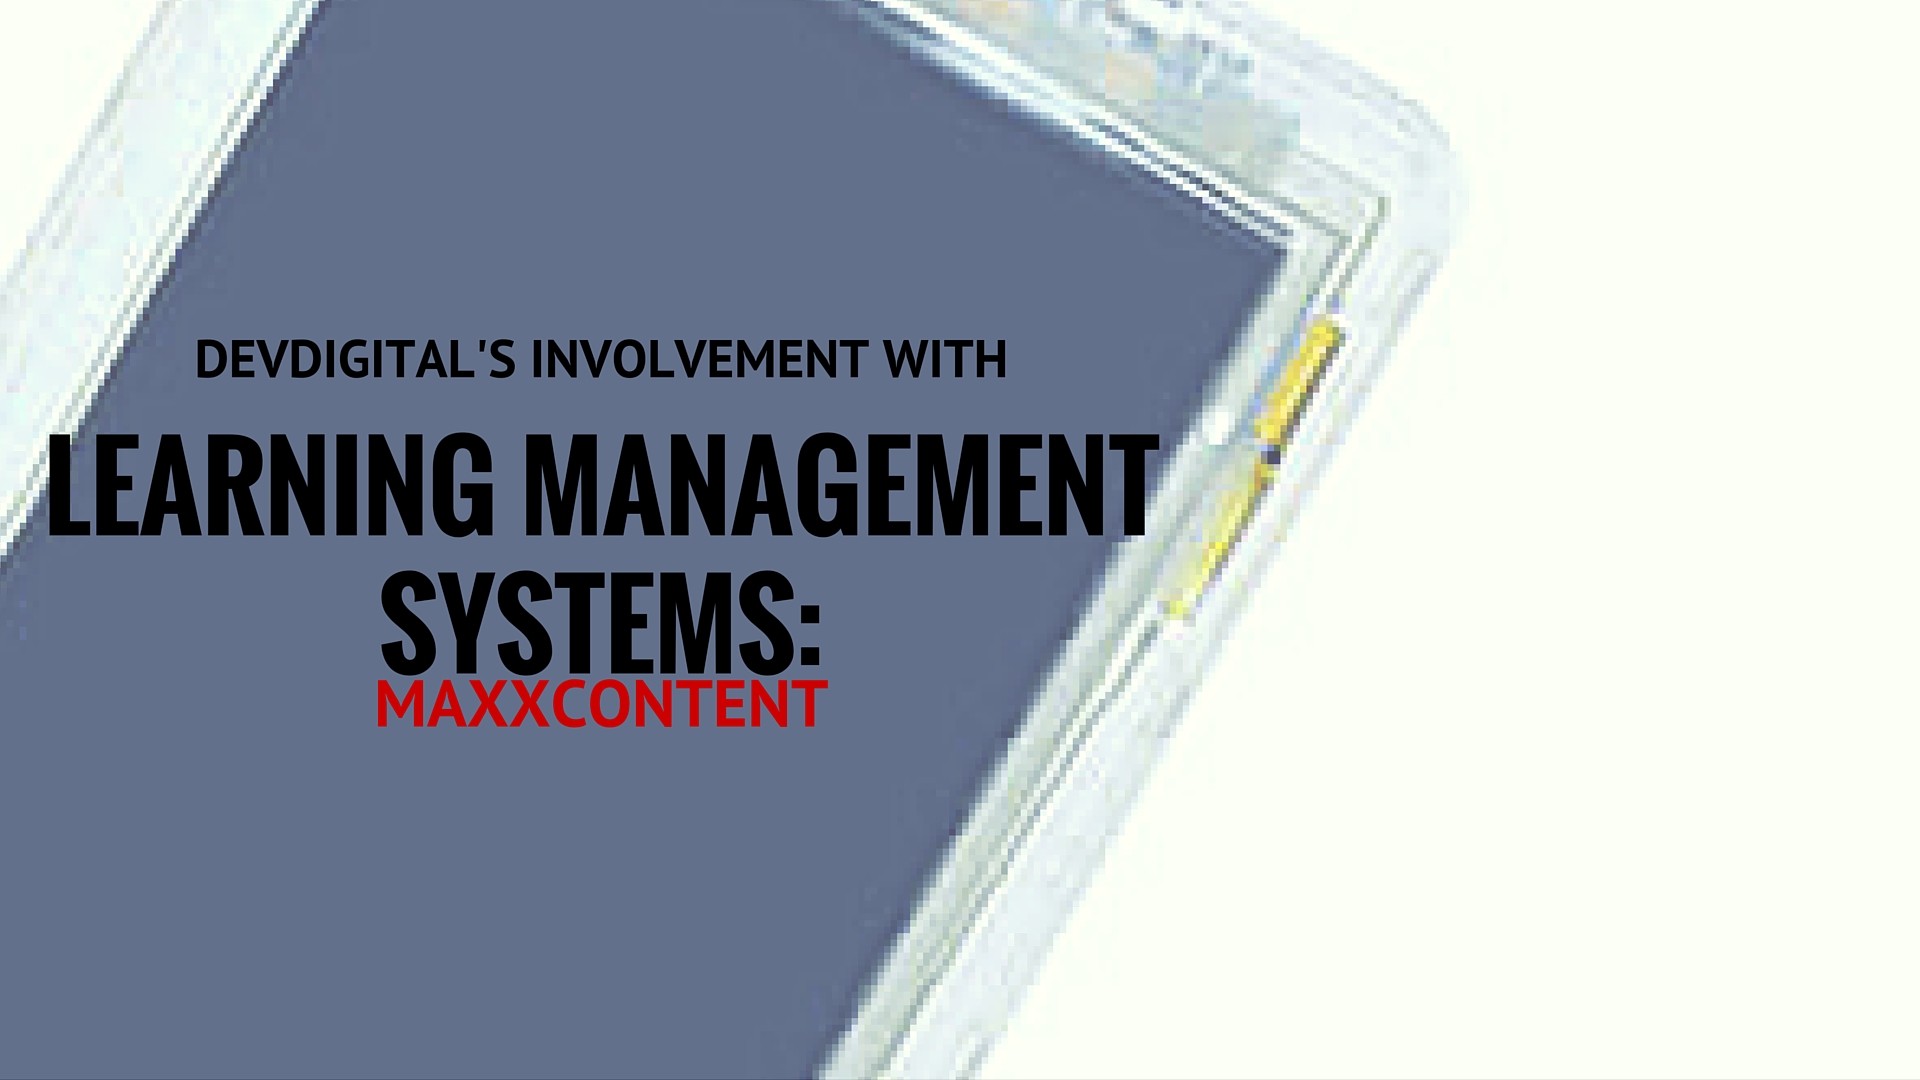 DevDigital's Involvement With LMS: MaxxContent